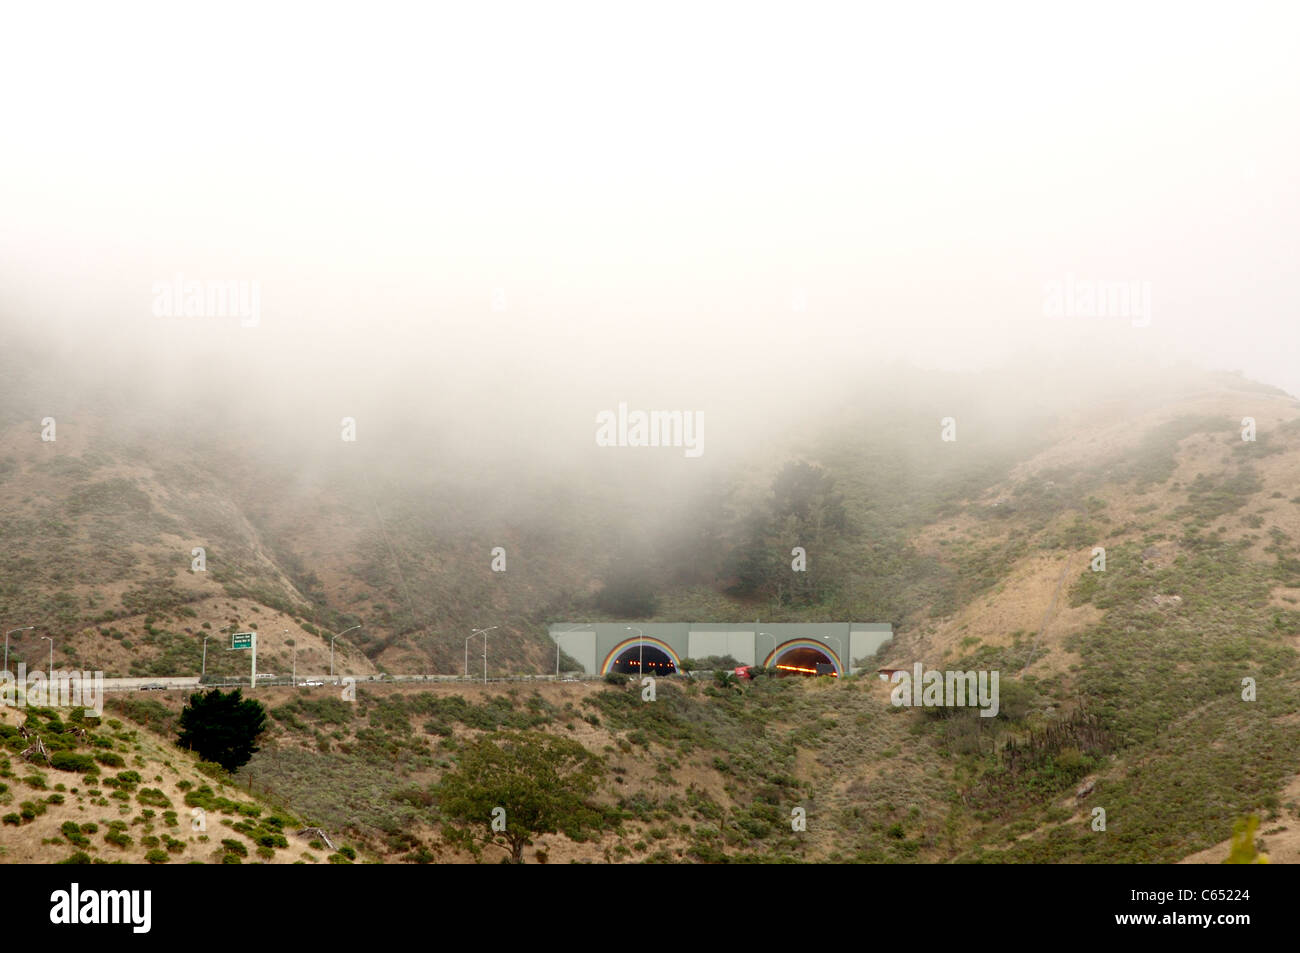 Nebel und Wolke hängt niedrig über dem Waldo Tunnel entlang Route 101 in der Nähe von San Francisco, Kalifornien Stockfoto